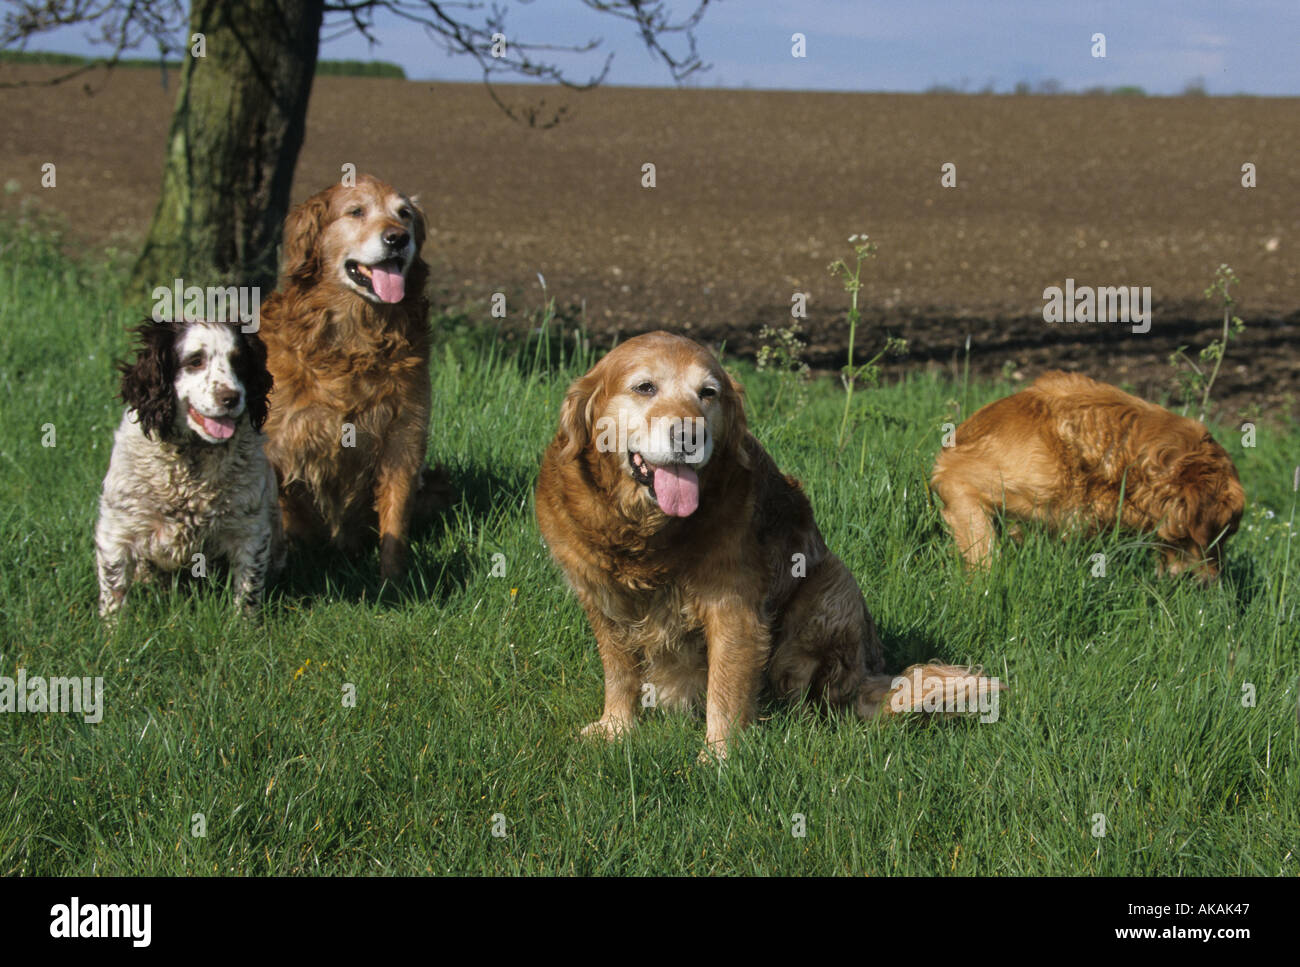 Pistola de cuatro perros sentados sobre el césped de la raza Golden Retriever y spaniel Foto de stock